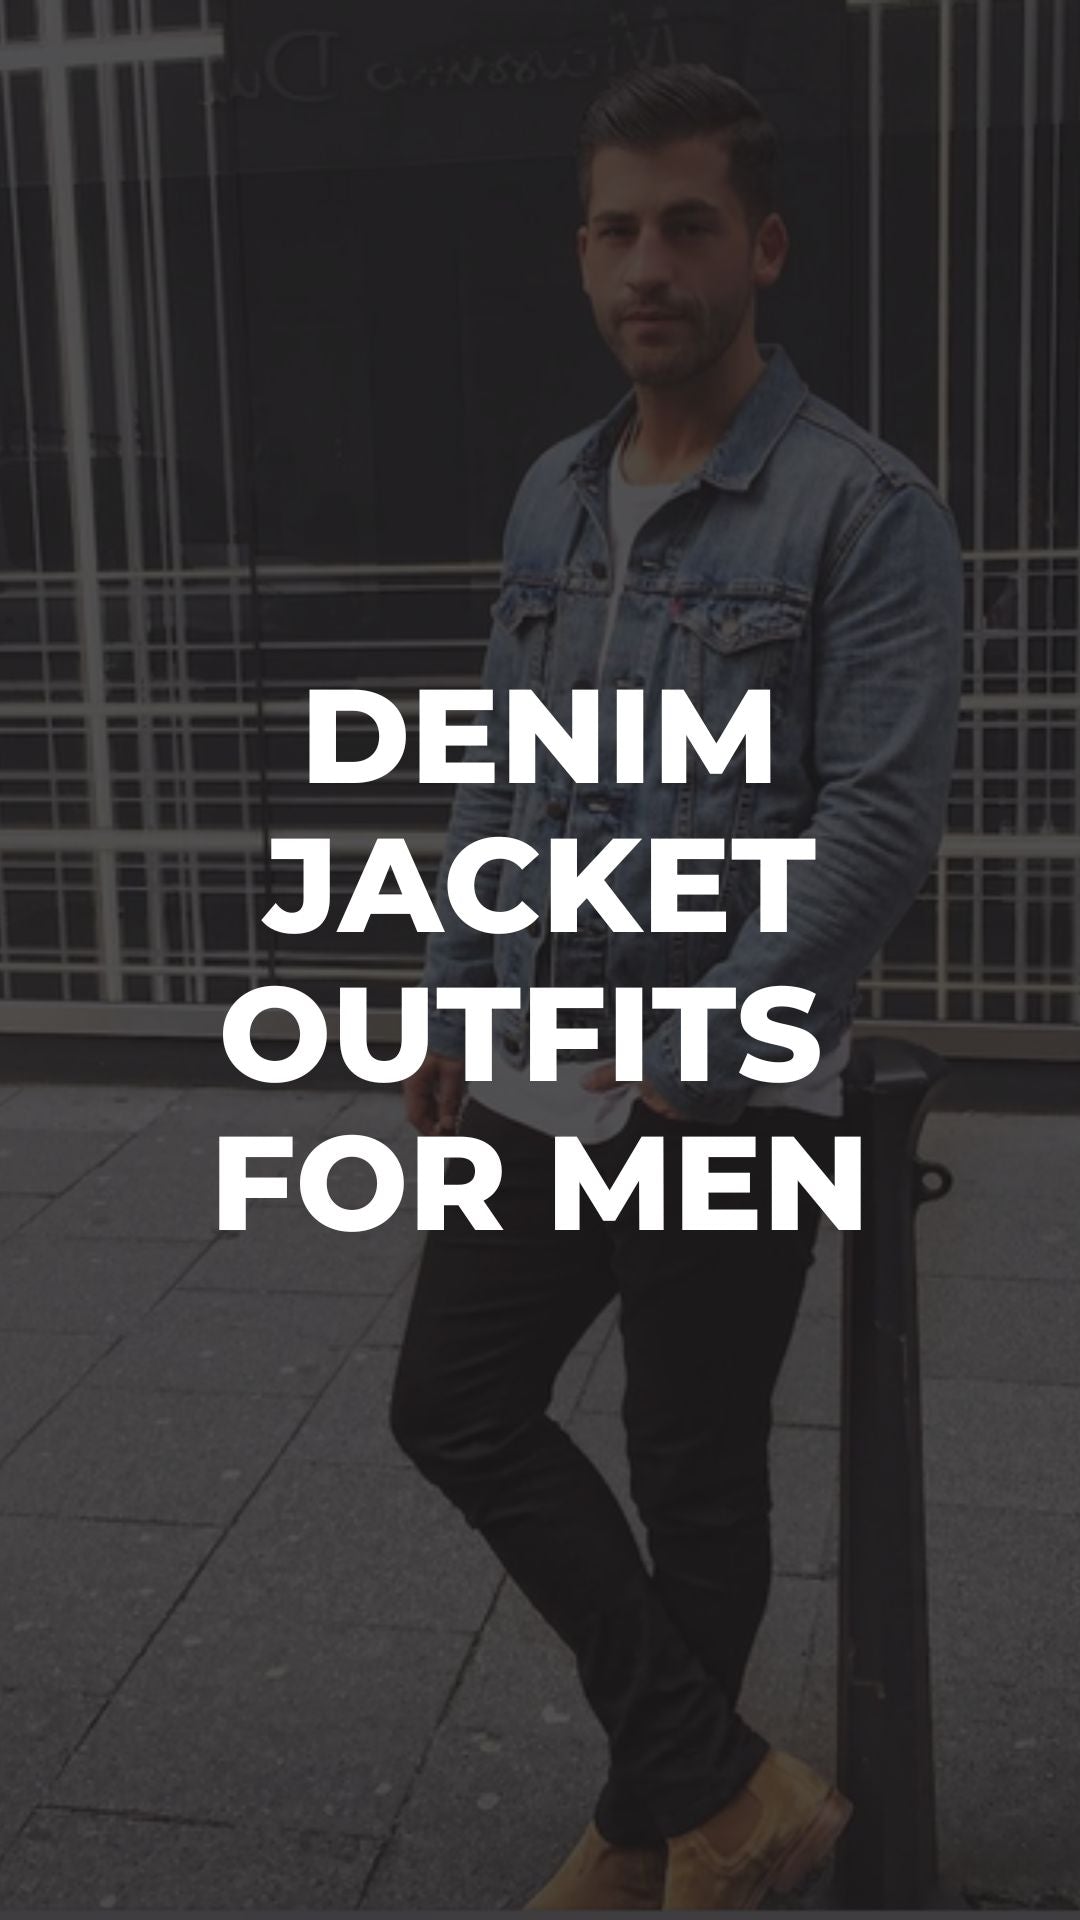 Styling Denim Jacket For Men #jacket #style #mensfashion #fashion - YouTube